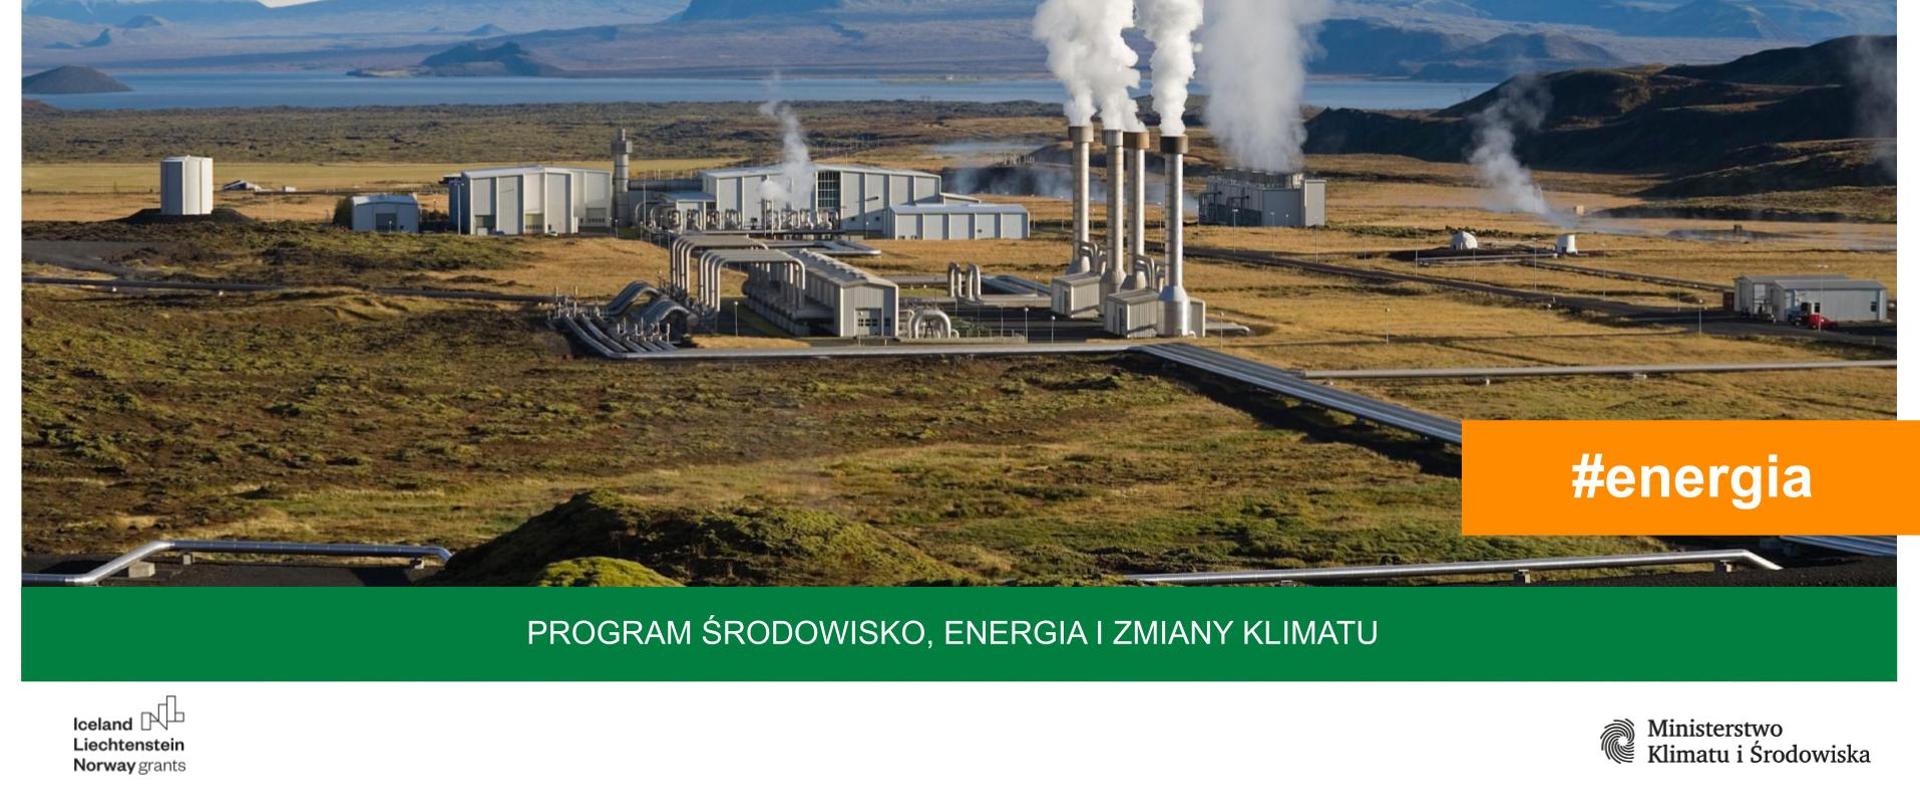 Energia_geotermalna_w_Programie_Środowisko_Energia_i_Zmiany_Klimatu_MF_EOG